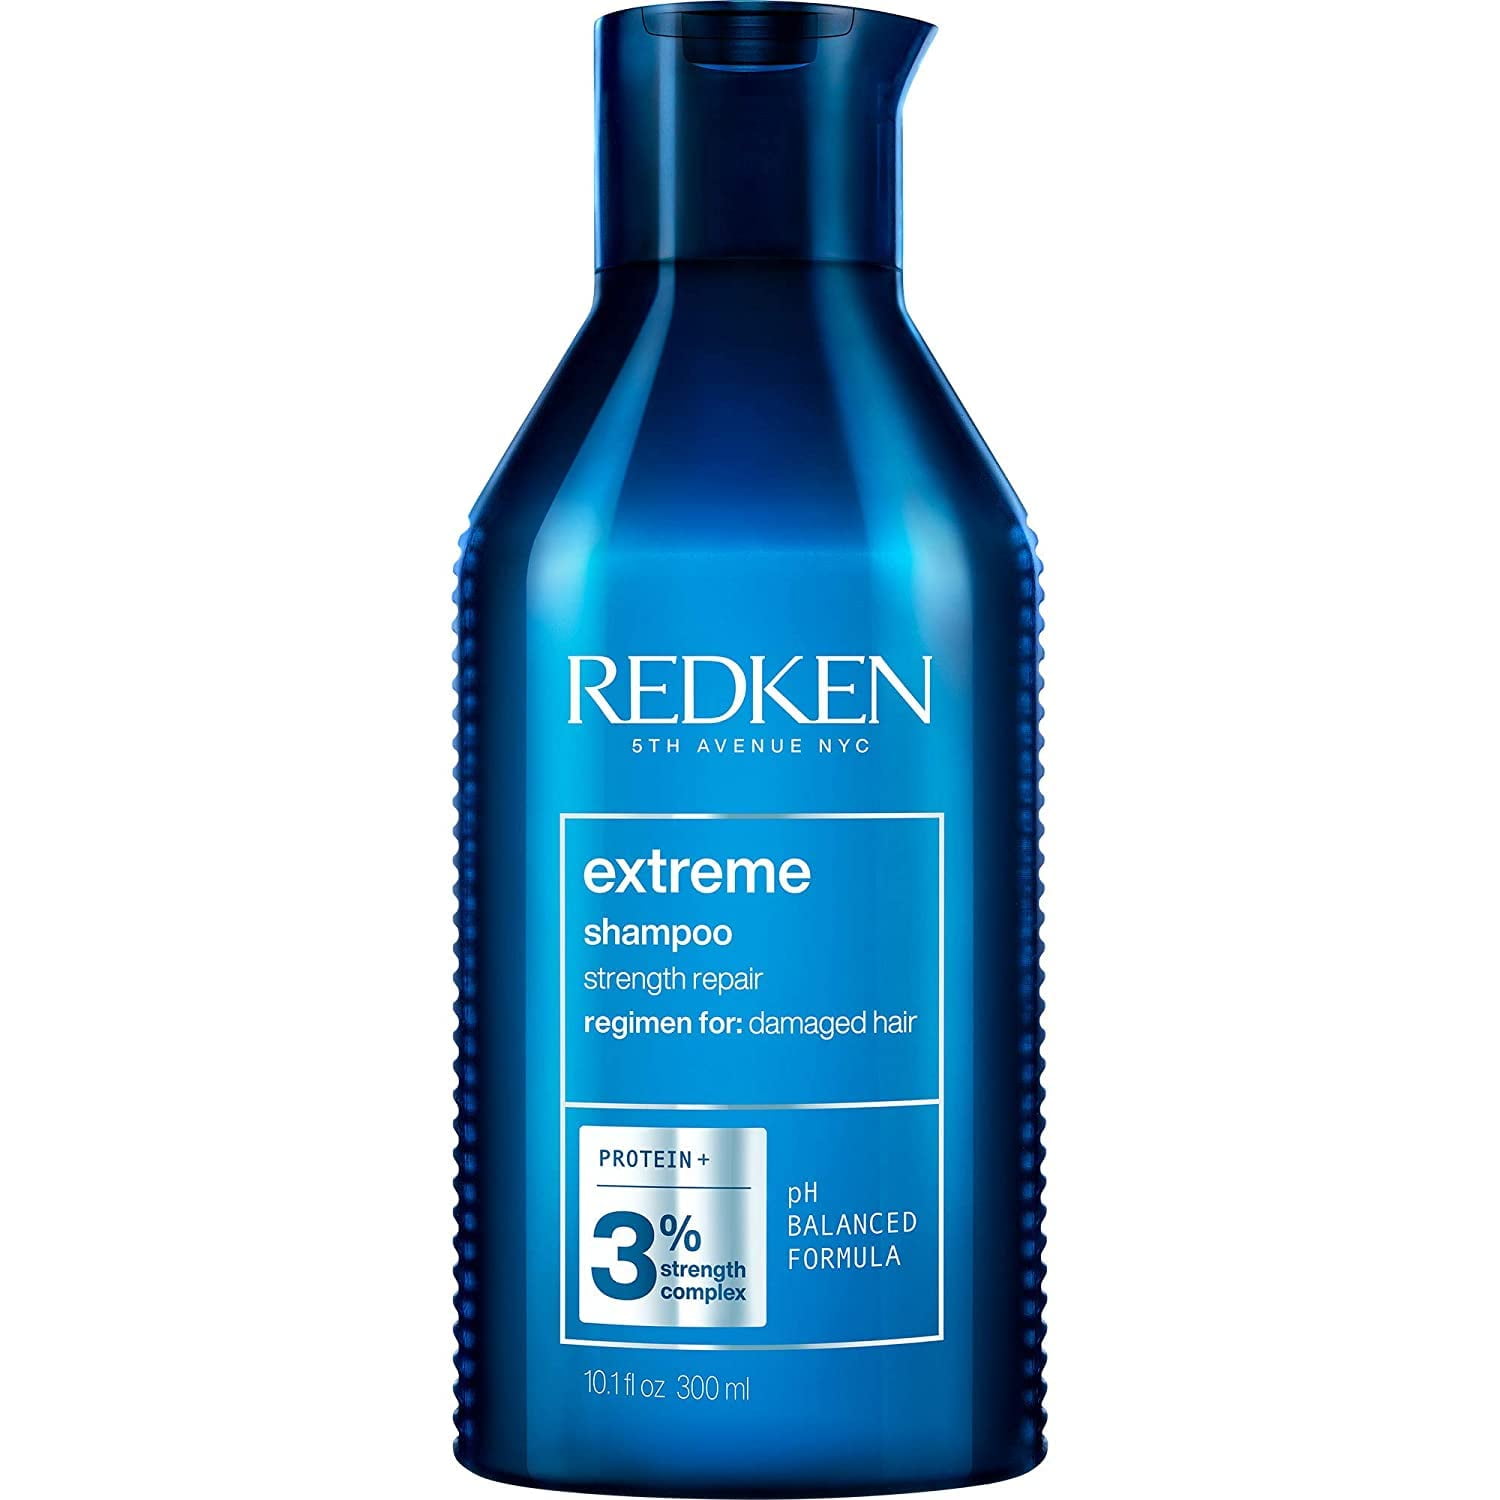 Redken Extreme Protein+ 3% Strength Complex 300 ml / 10.1 oz - Walmart.com